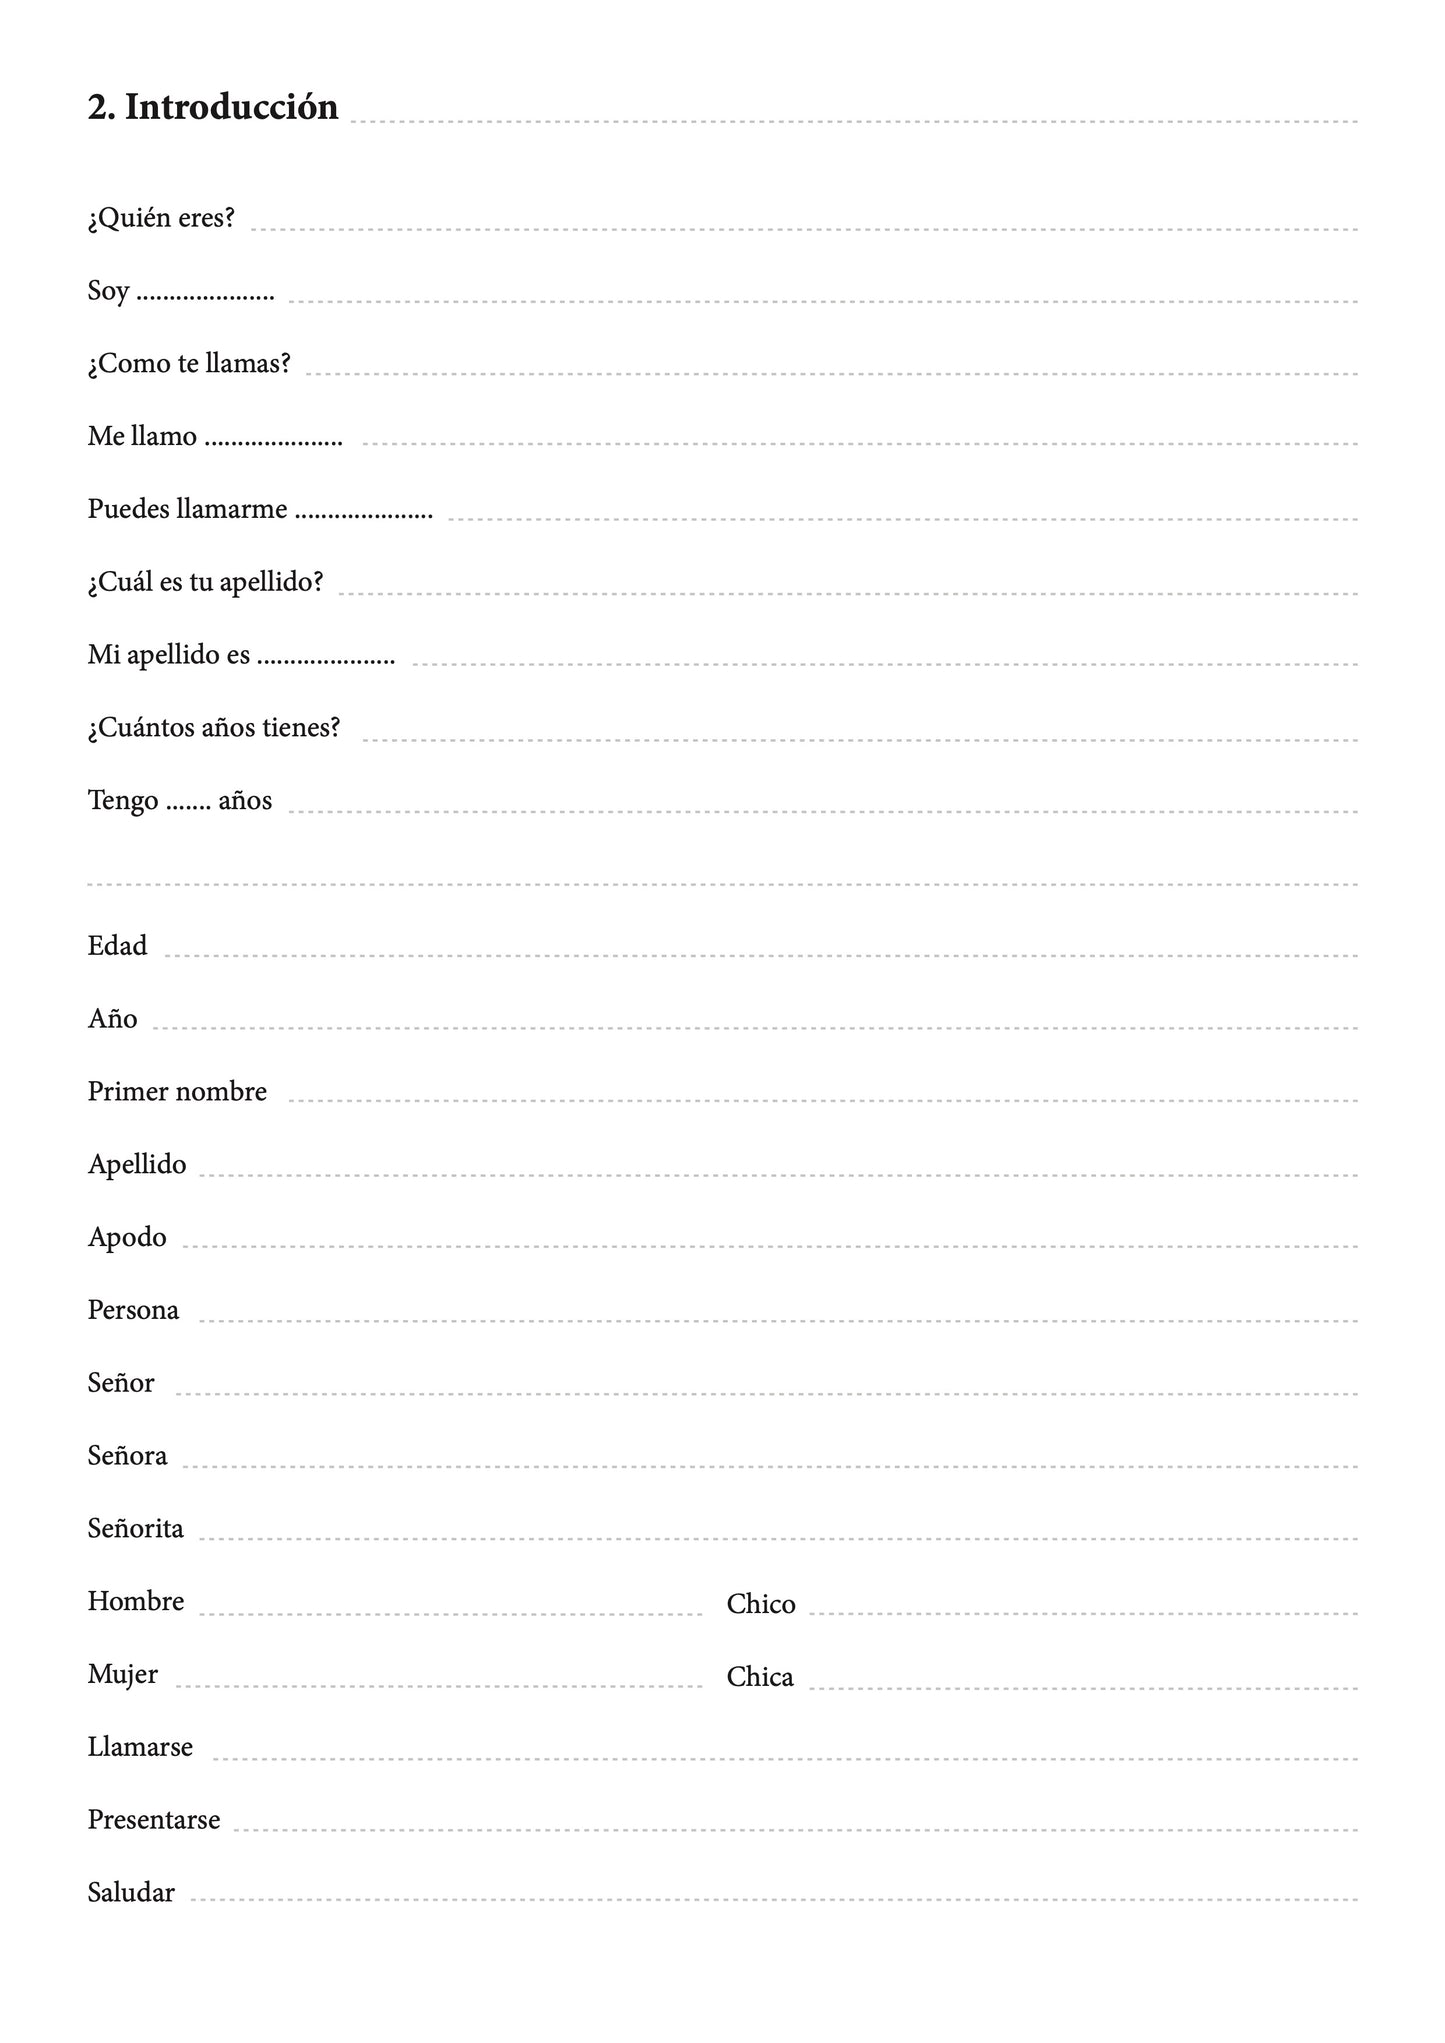 Español-malayalam cuaderno de vocabulario